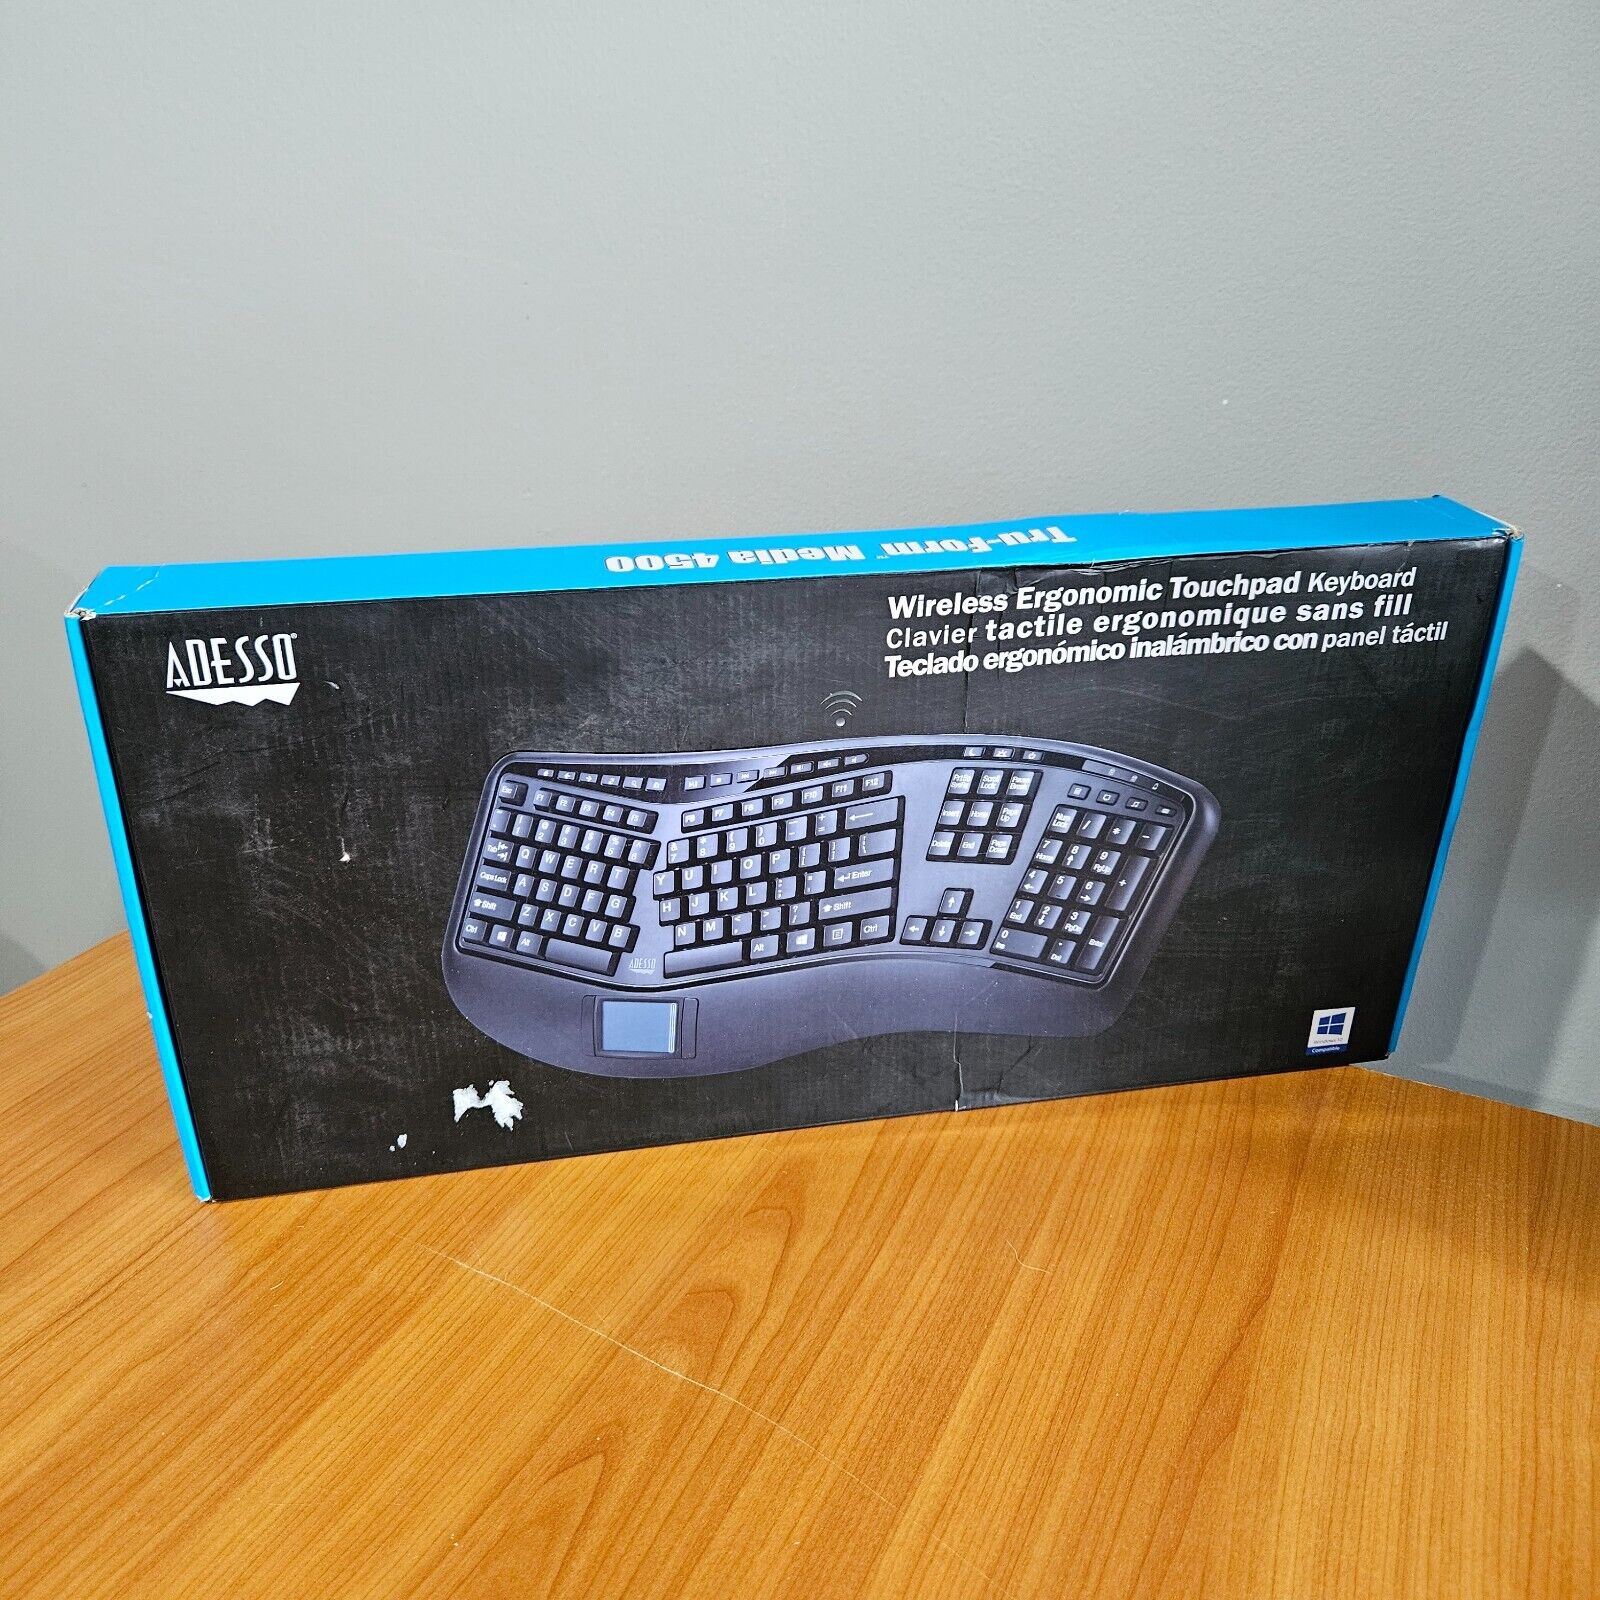 New Adesso Wireless Ergonomic Touchpad Keyboard - Tru-Form 4500 Black WKB-4500UB